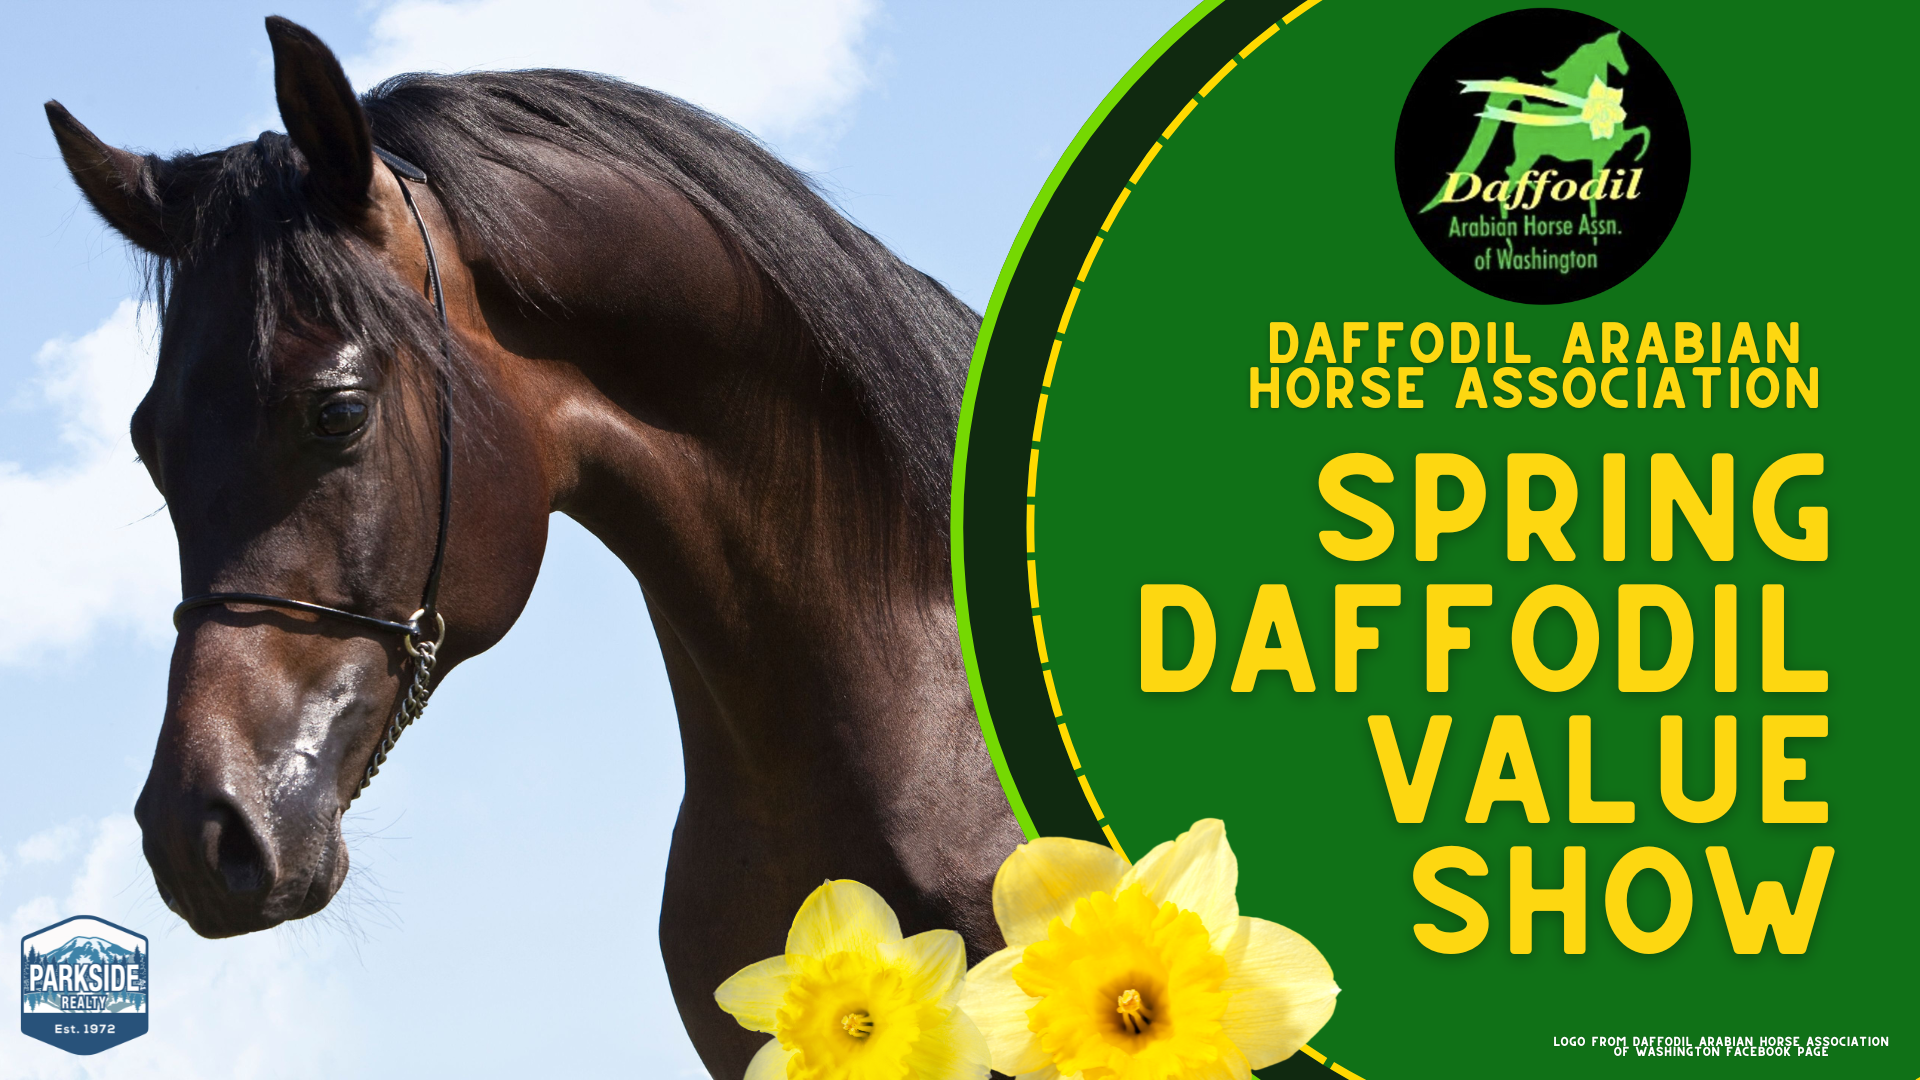 Daffodil Arabian Horse Association: Spring Daffodil Value Show